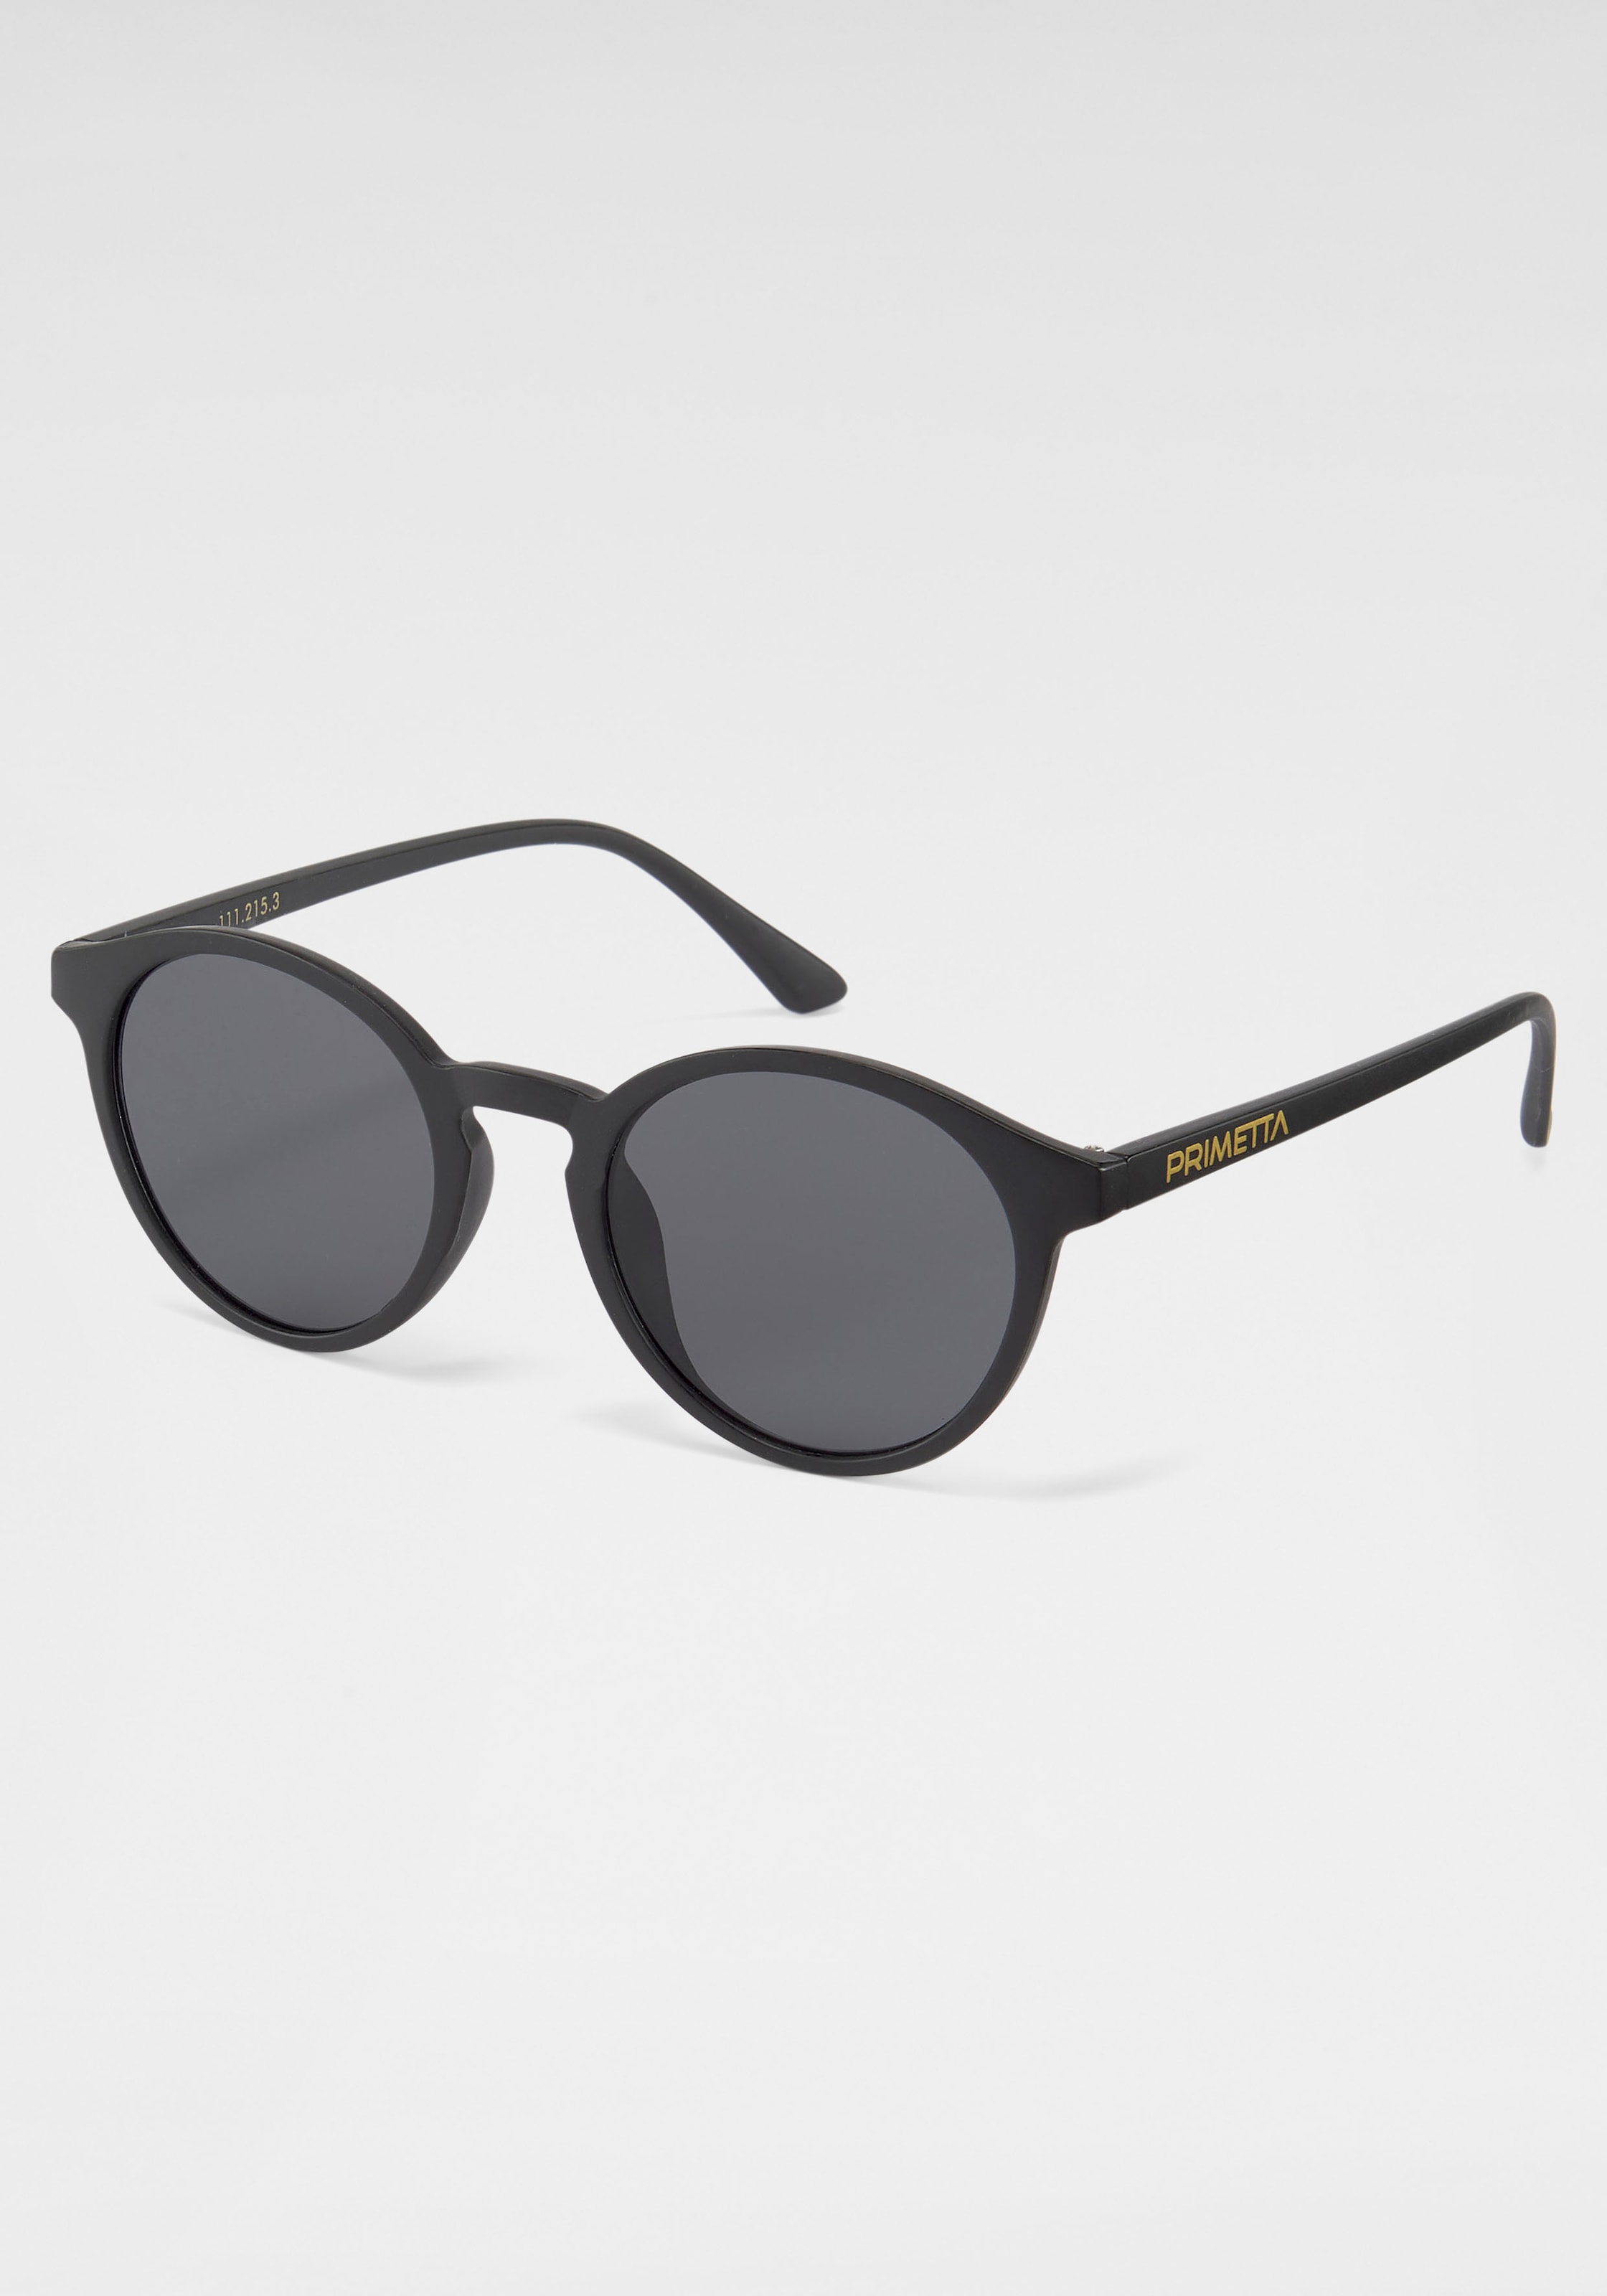 PRIMETTA Sonnenbrille OTTO Shop Online im Eyewear